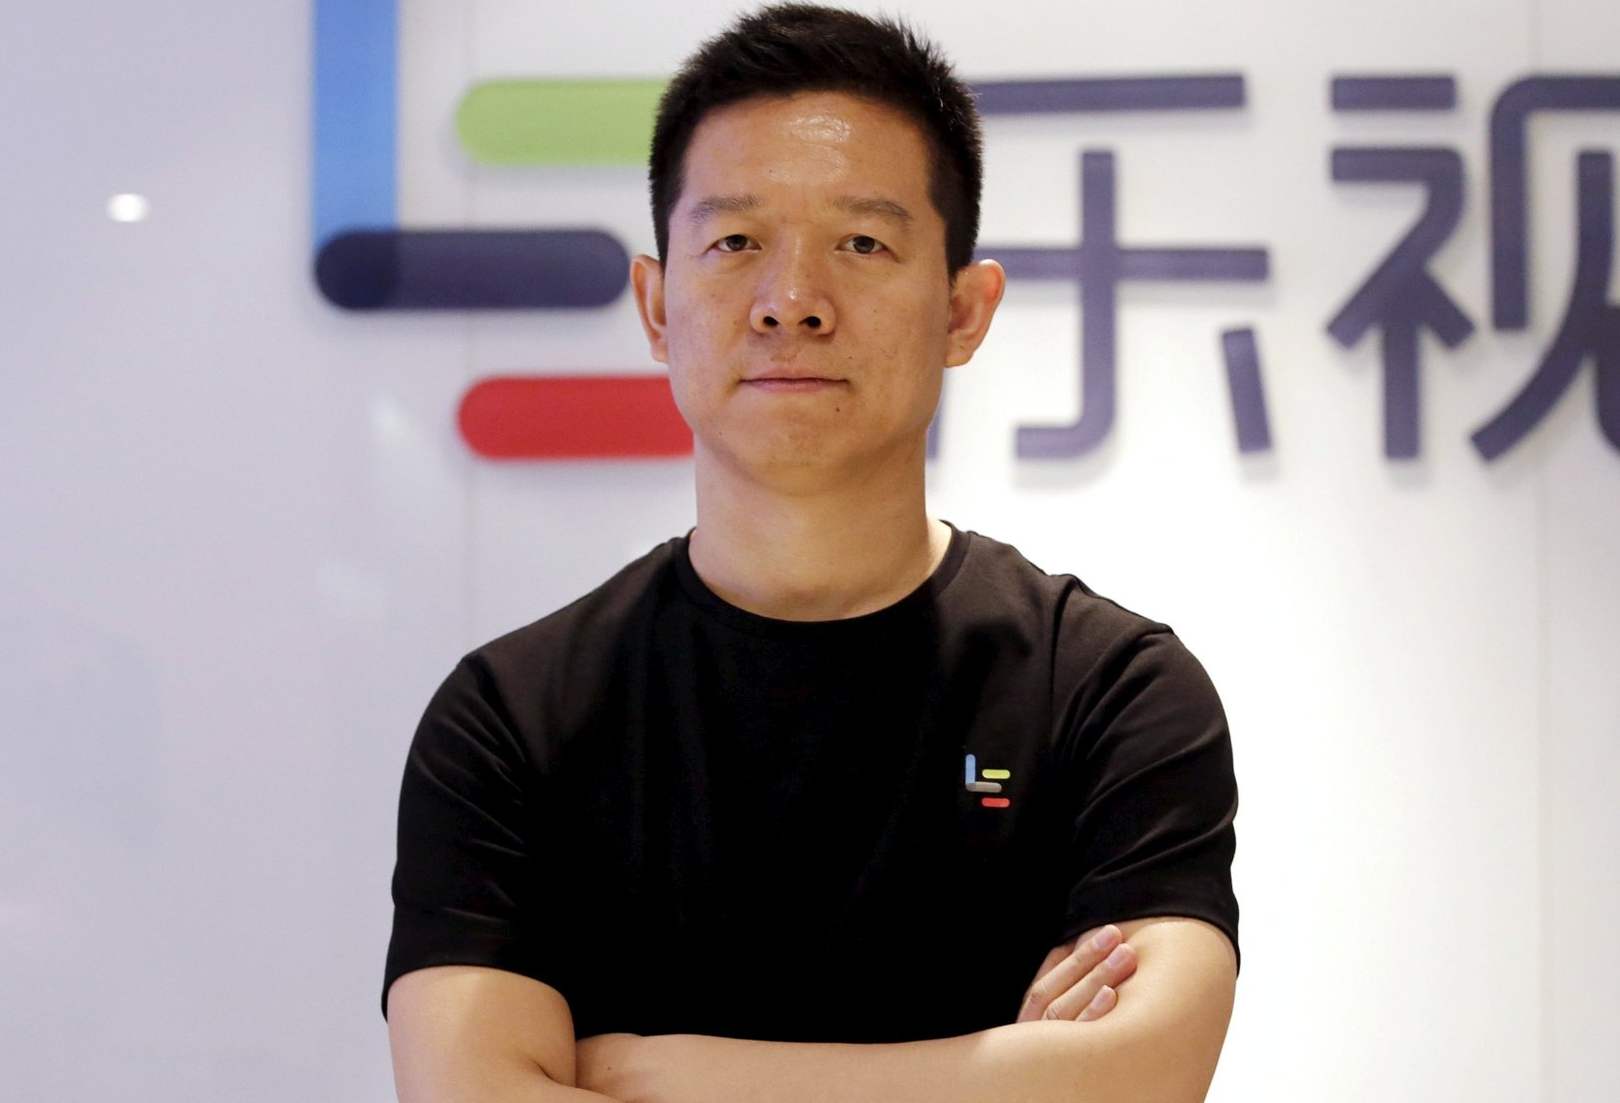 Цзя Юэтин, бывший генеральный директор и основатель китайской компании LeEco